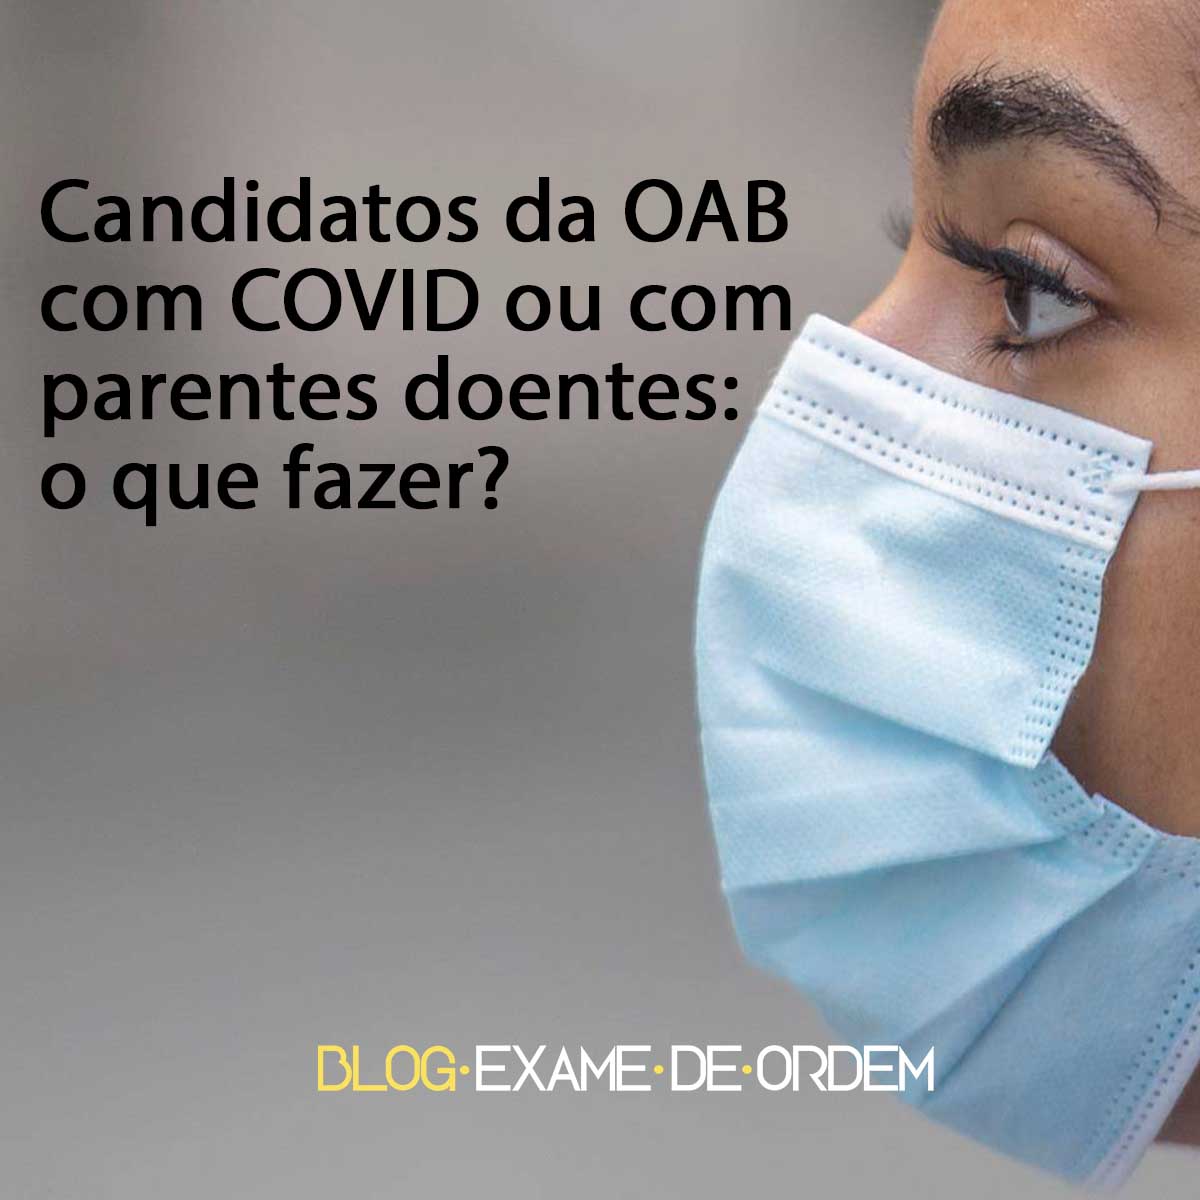 Candidatos da OAB com COVID ou com parentes doentes: o que fazer?